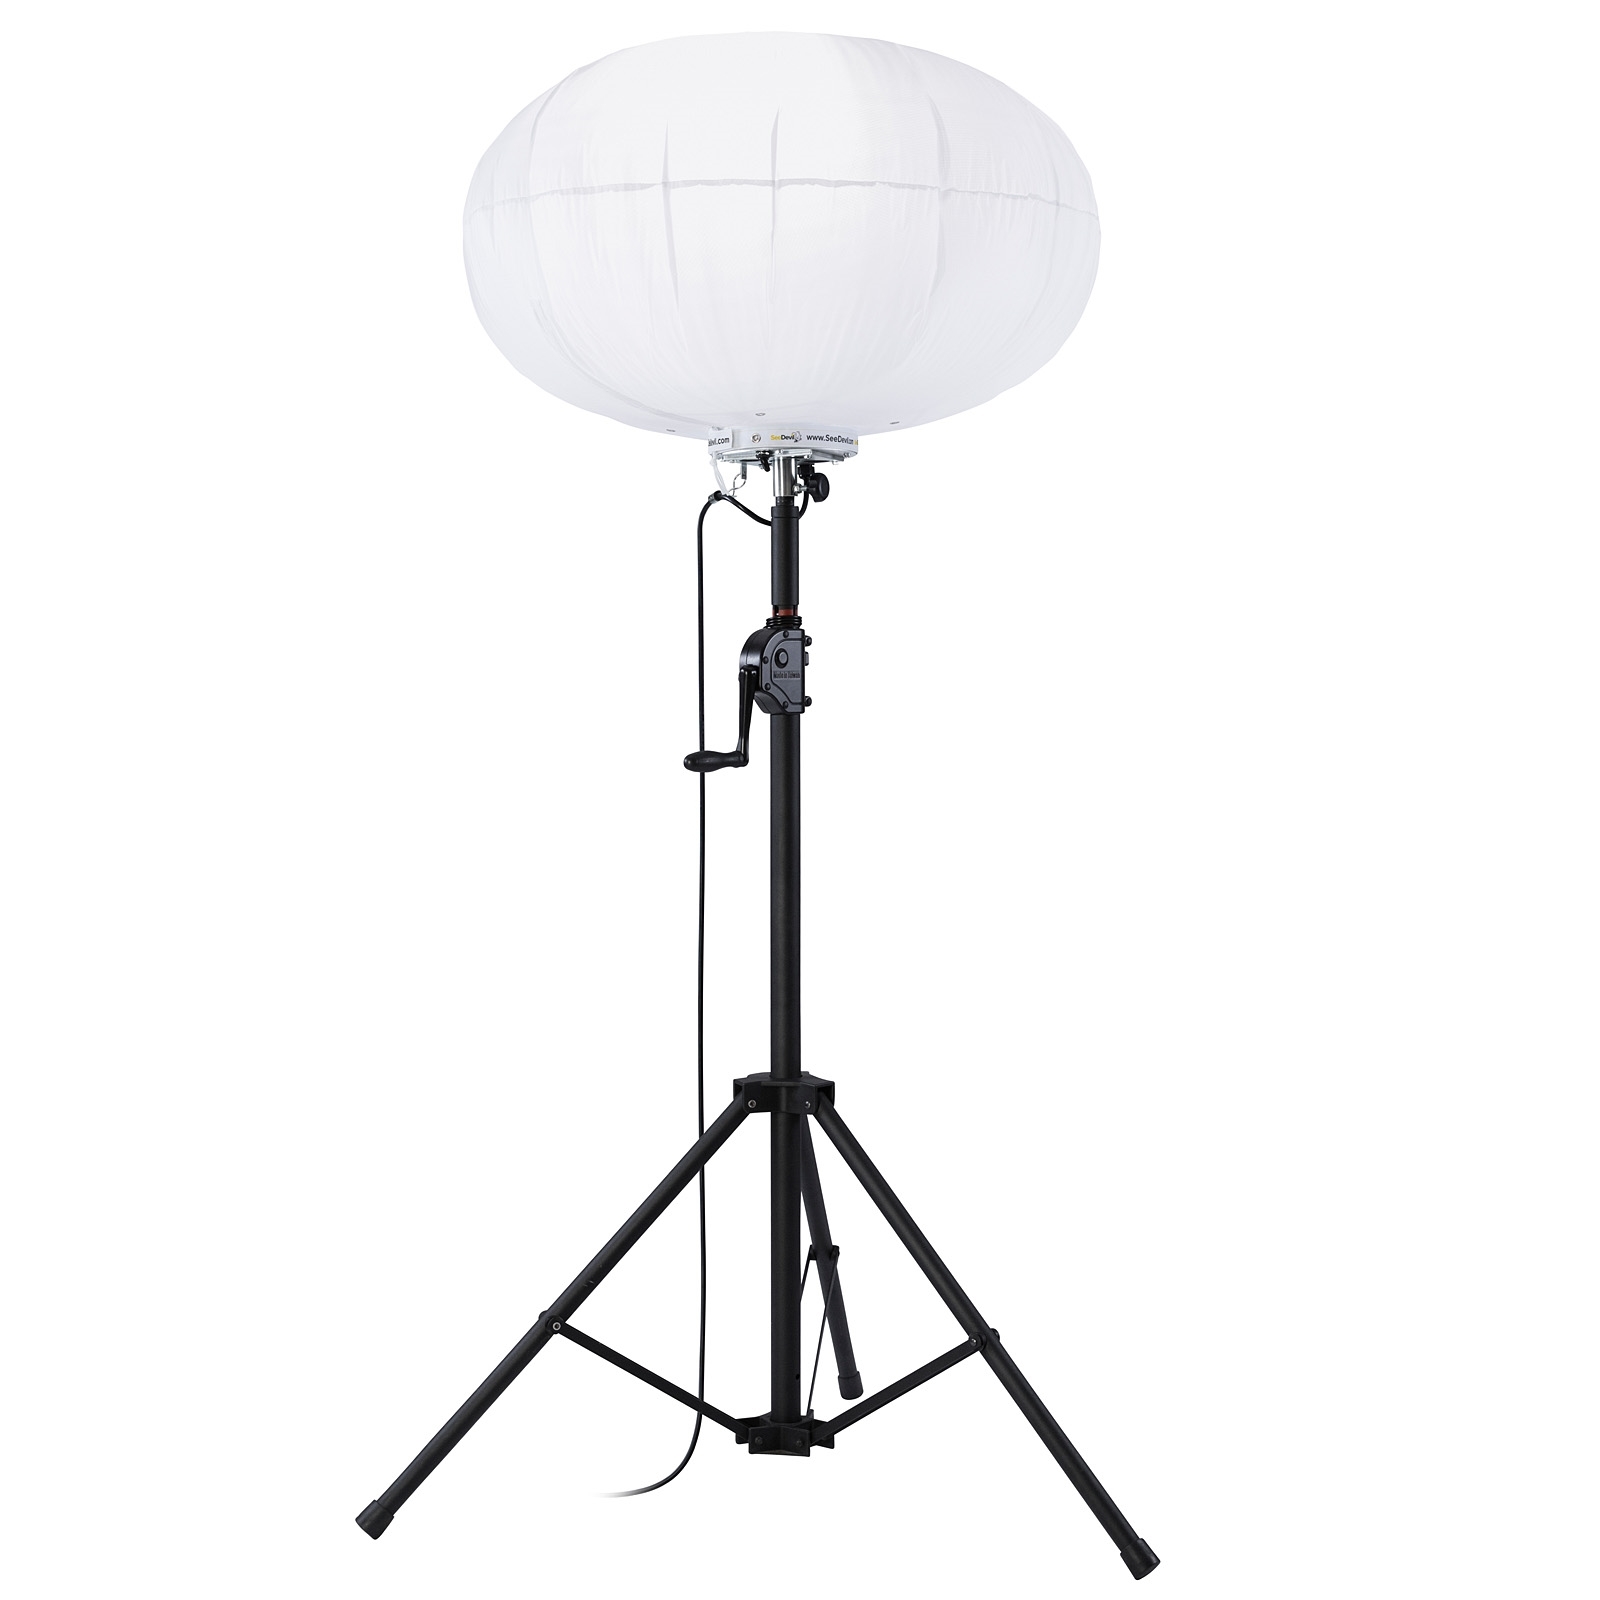 SeeDevil Portable LED Work Light, 7800 Lumen, 60 Watt LED Balloon